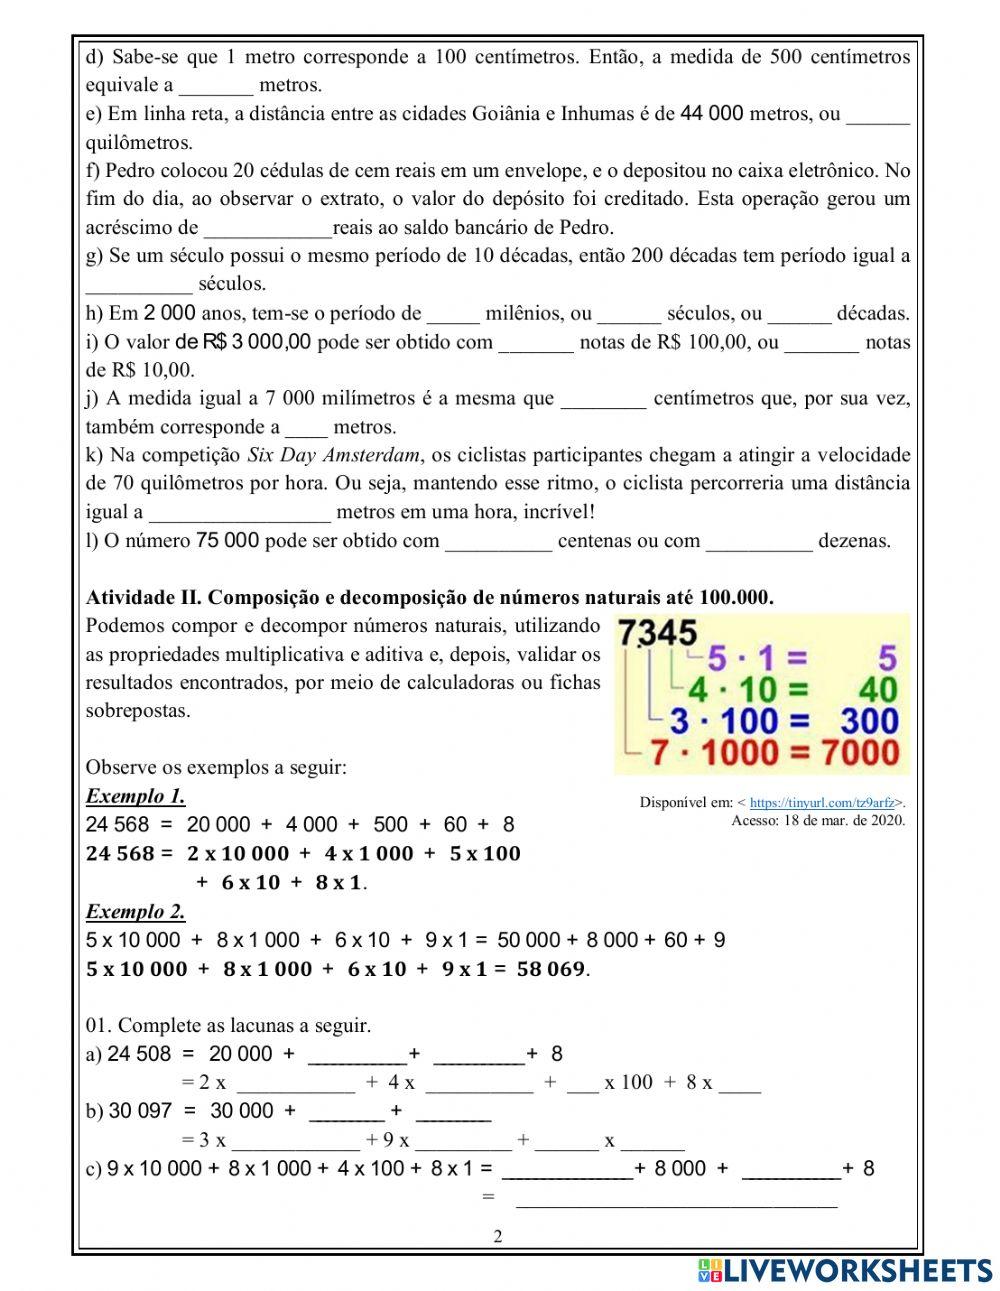 Sistema de numeração, composição e decomposição de números,